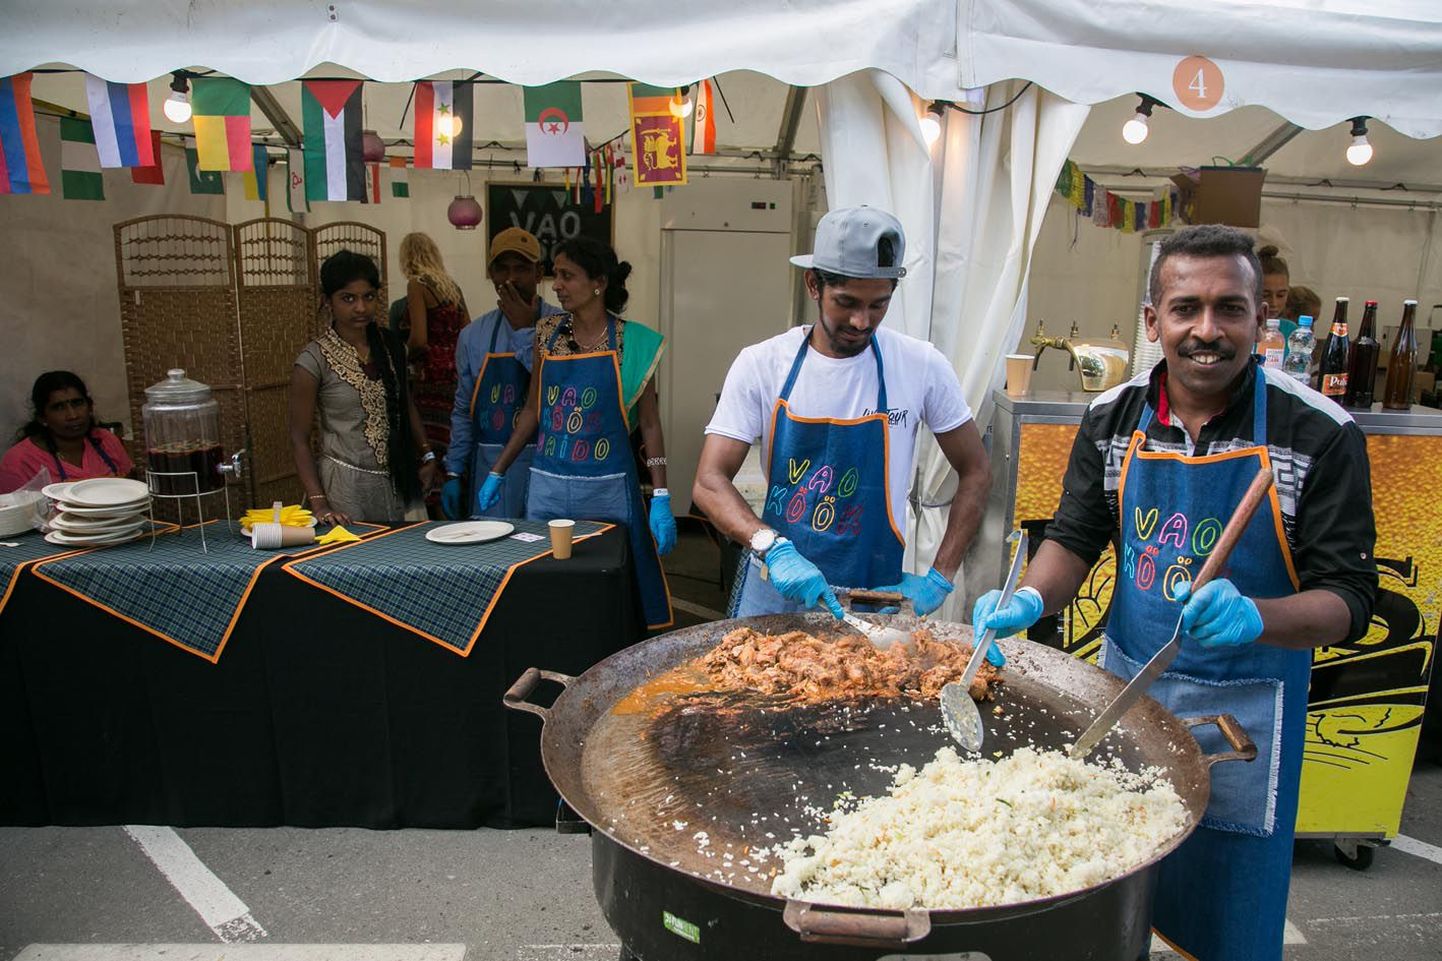 Vao pagulaskeskuse tumedanahalised kokad kutsusid lärmakalt rahvast nende poolt pakutavat kanakarrit ja riisi sööma.